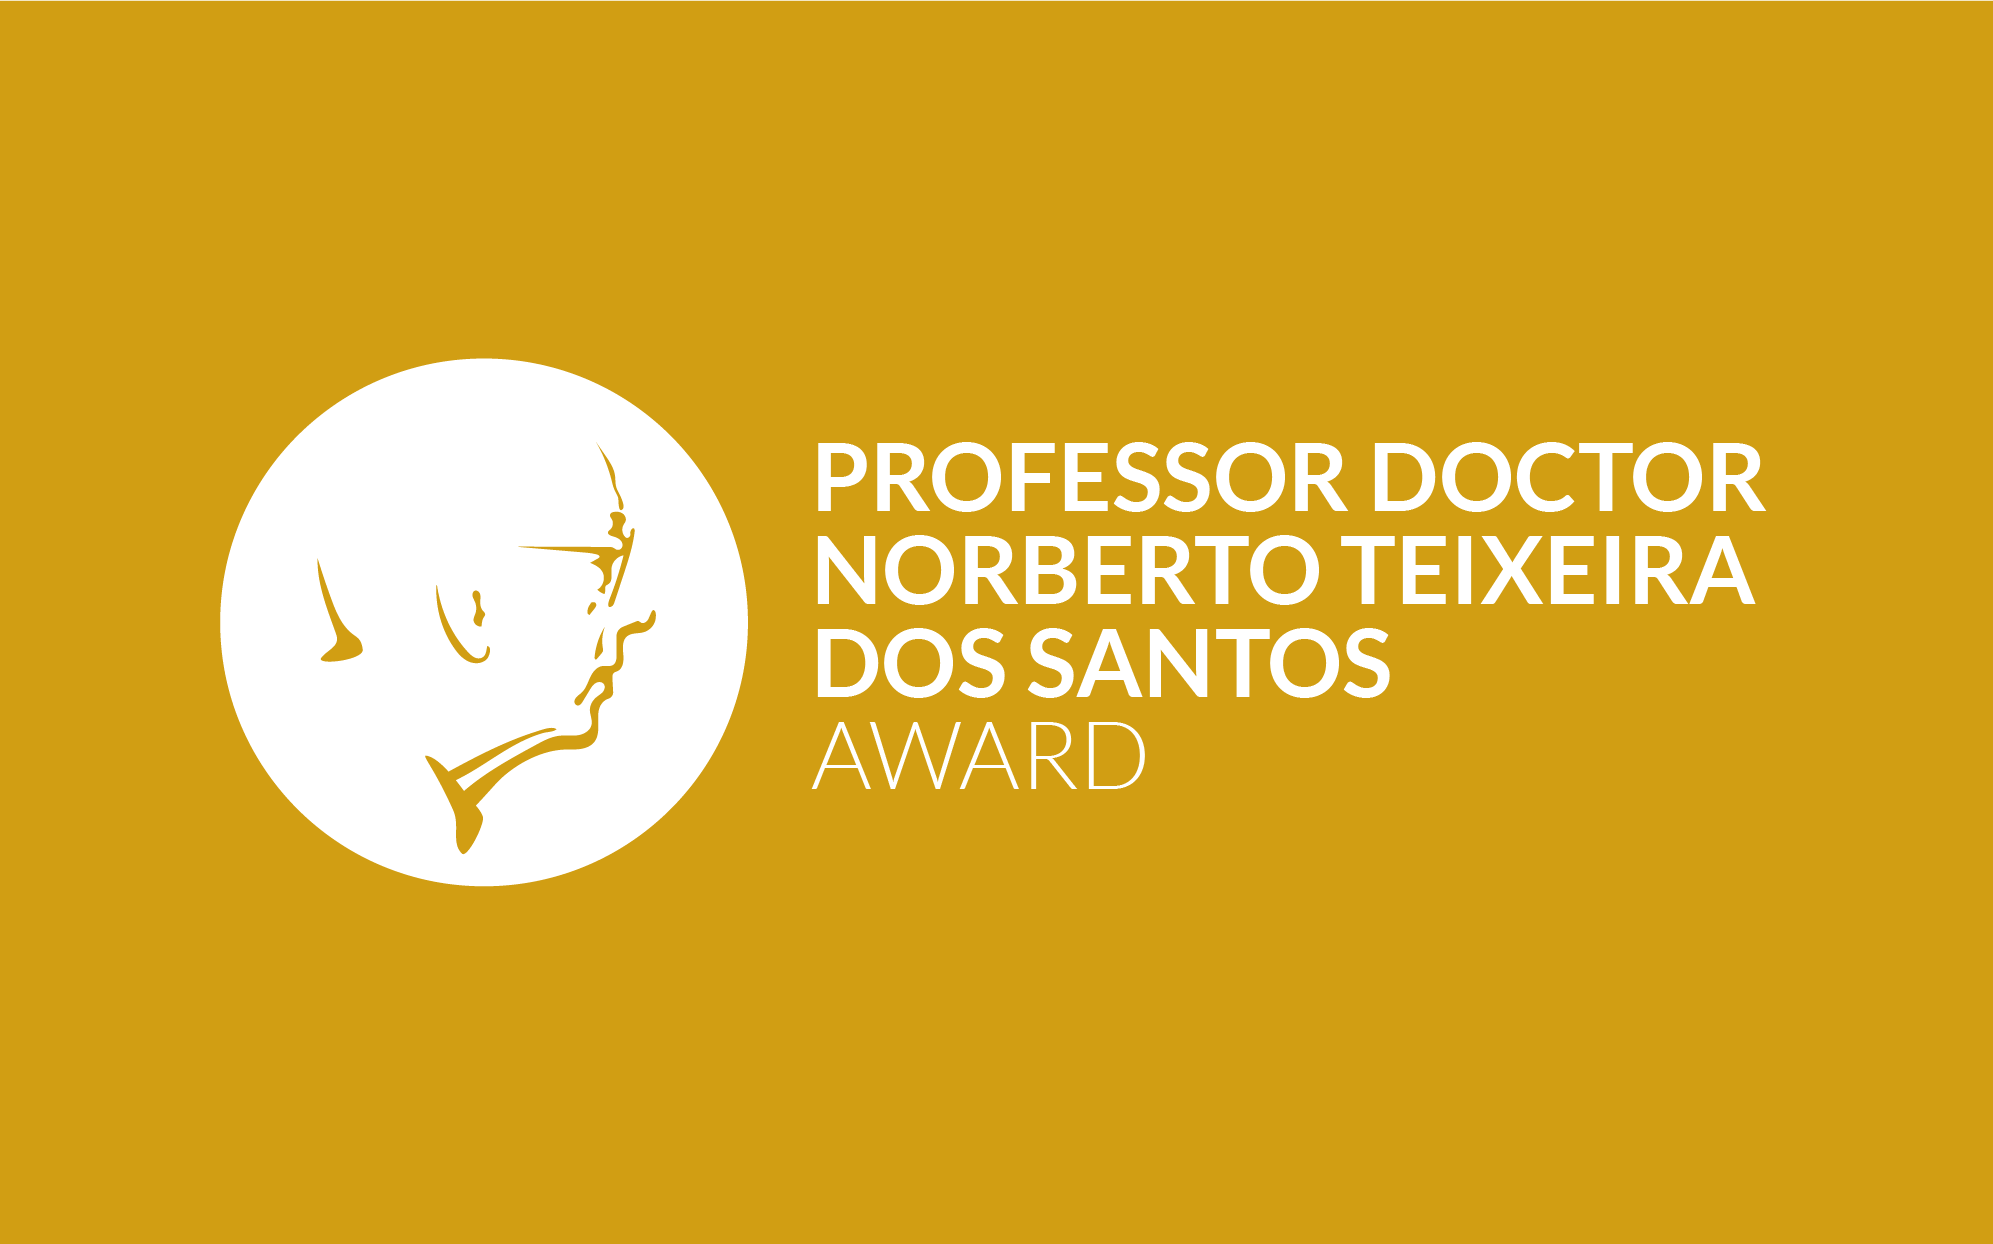 Professor Doctor Norberto Teixeira dos Santos Award